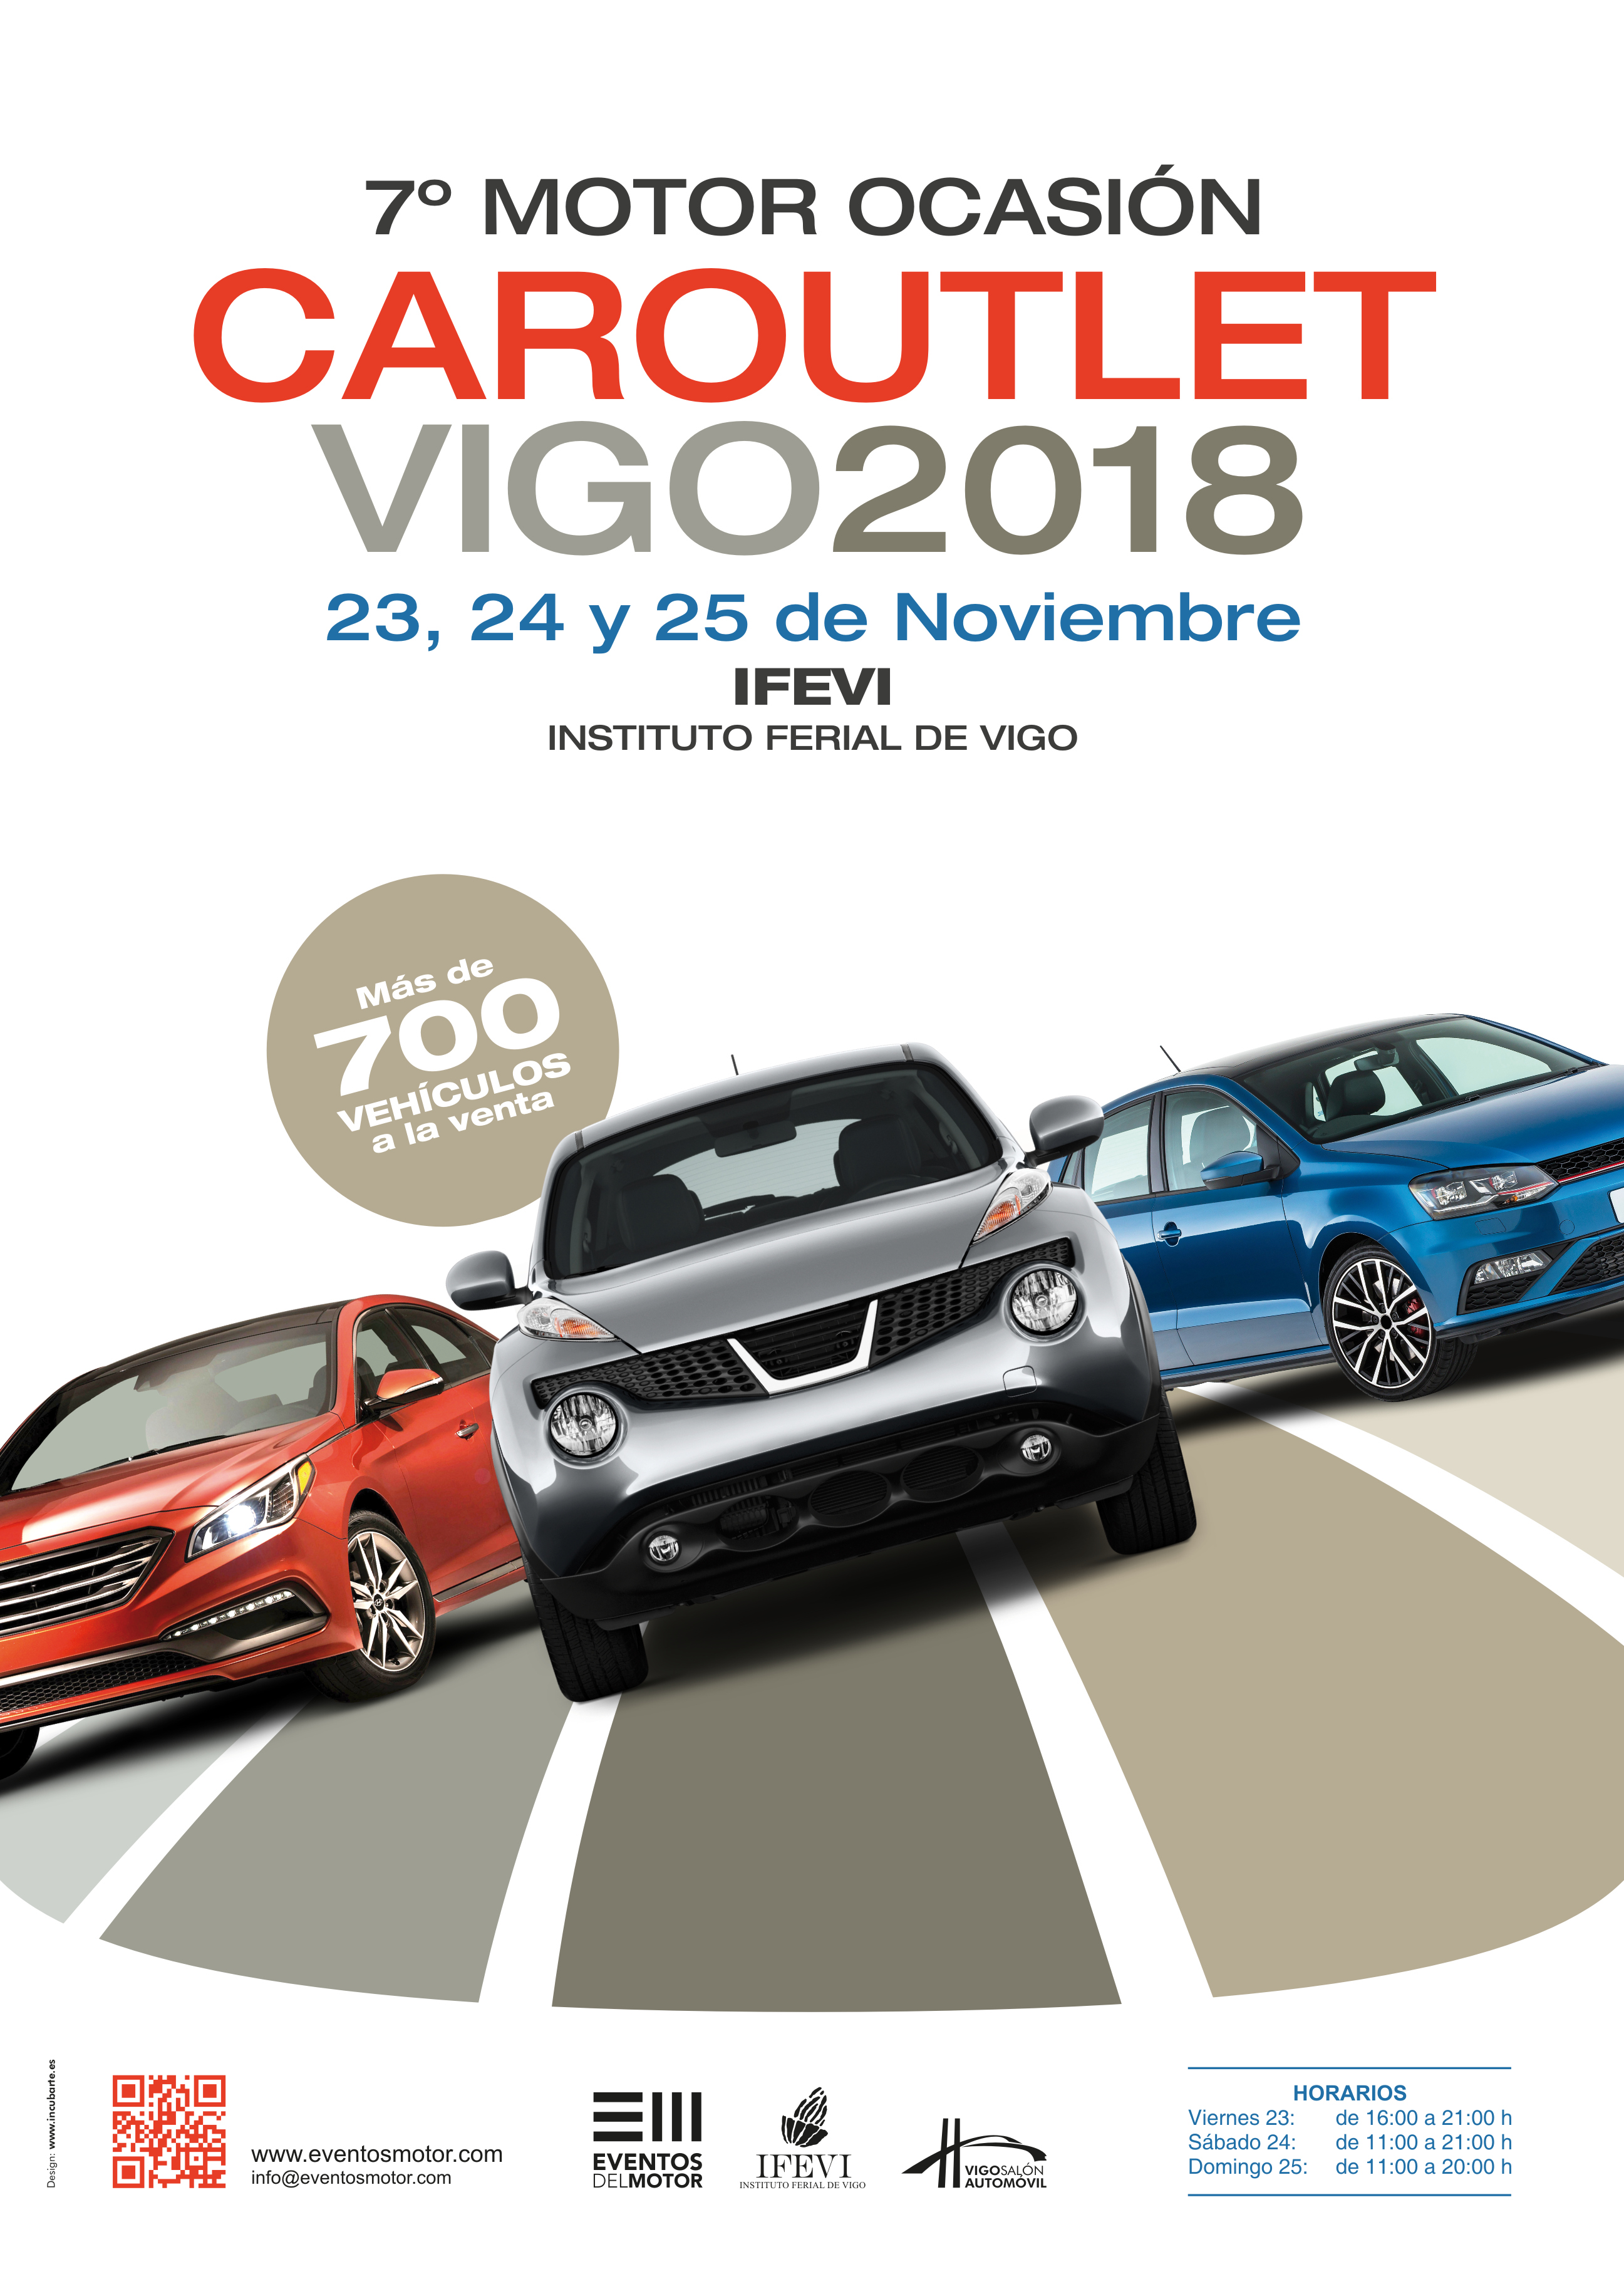 Car Outlet feria de coches de ocasión de Vigo 2018